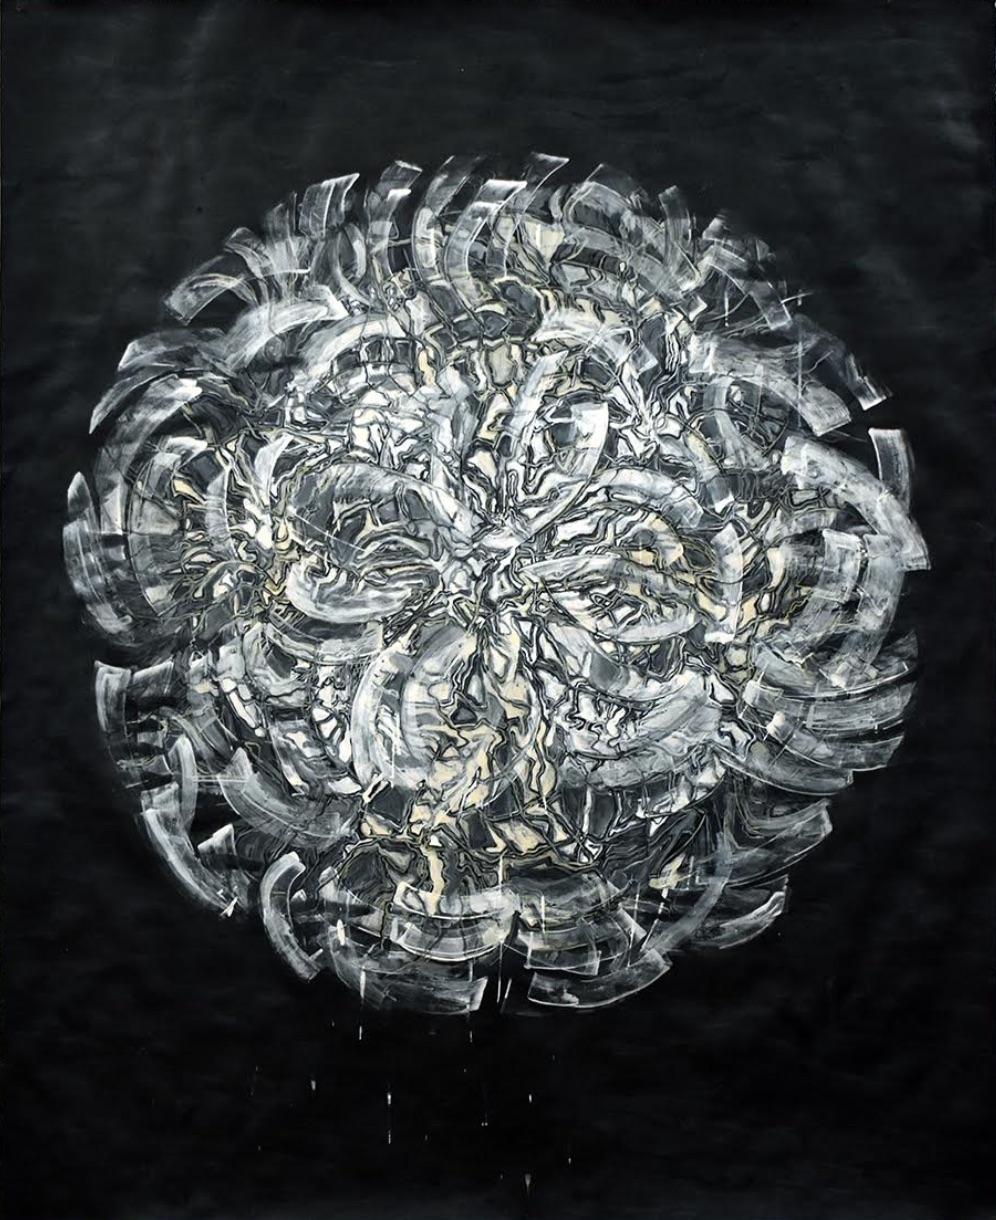 Nancy Agati Abstract Painting – Turbine: großes zeitgenössisches abstraktes, gestisches Blumengemälde auf schwarzem Papier